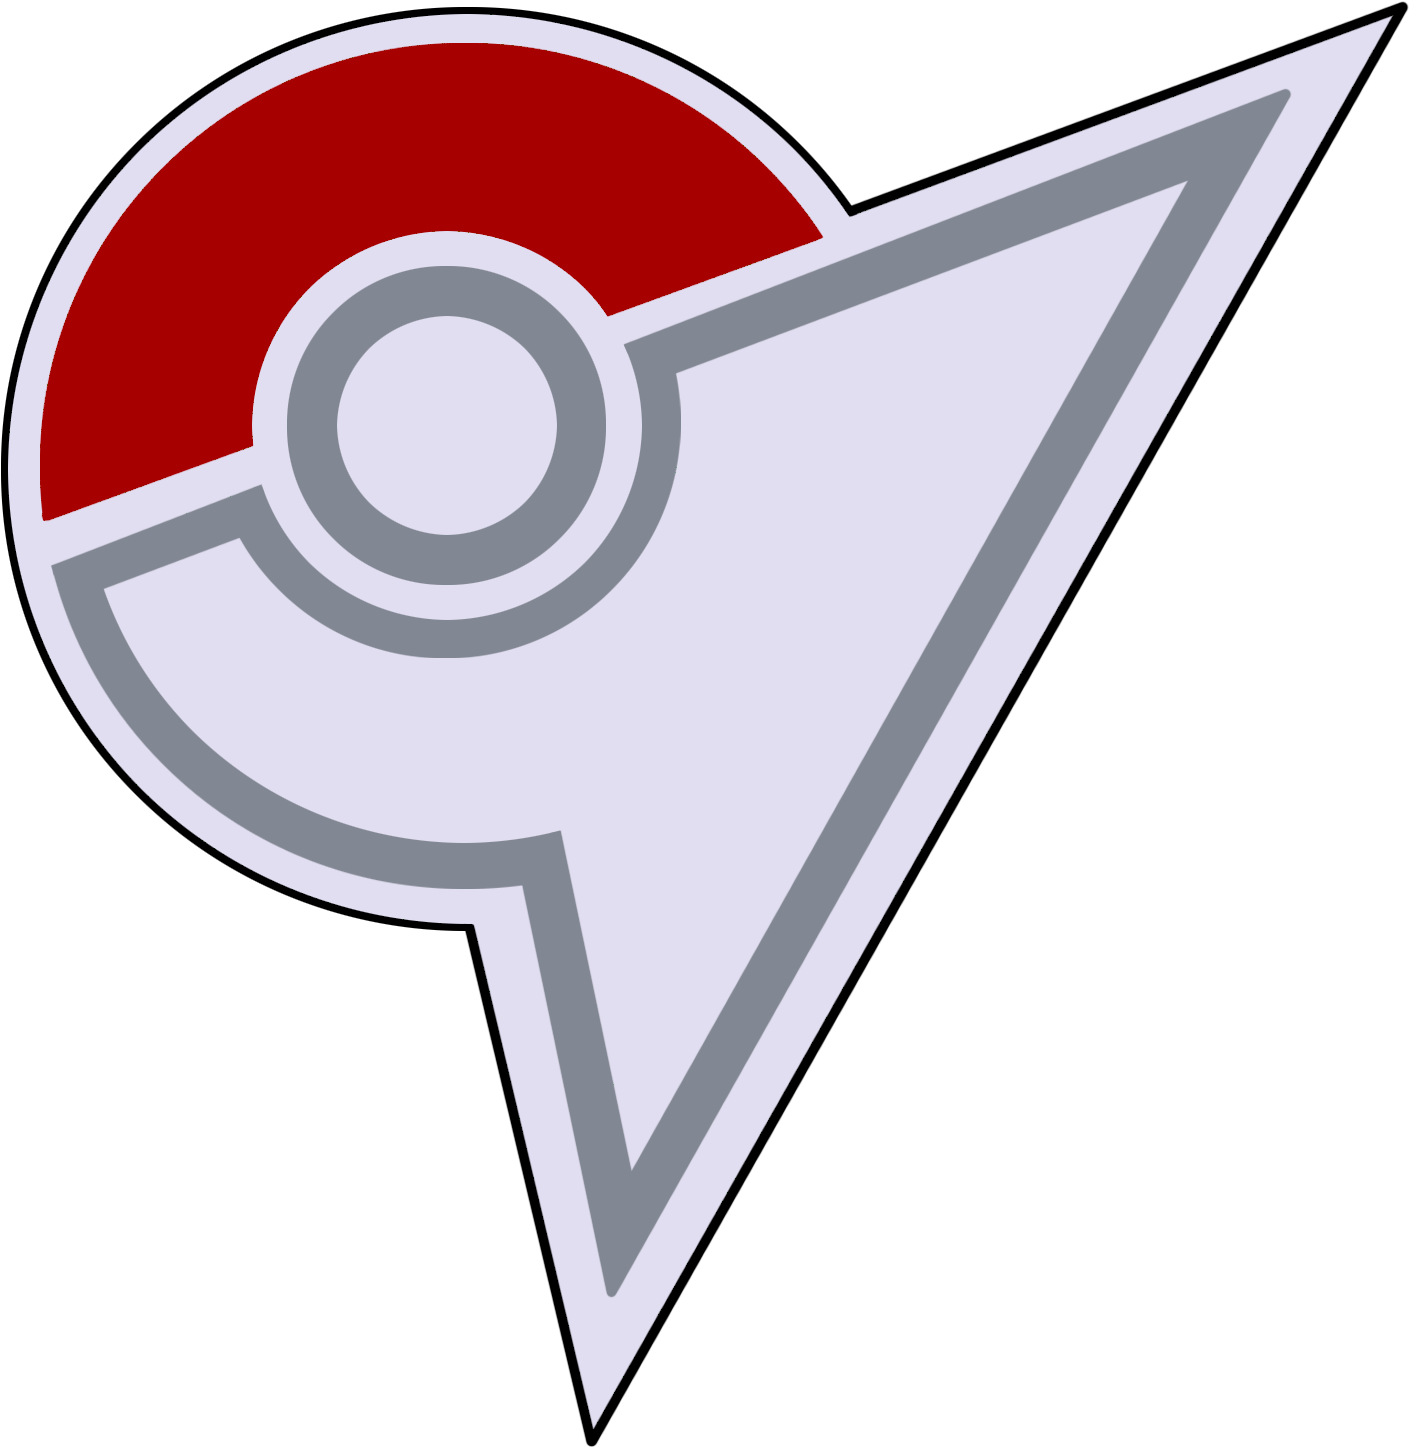 Go Pokemon Logo Transparent - Pokemon Elite Four Logo Clipart (1500x1528), Png Download